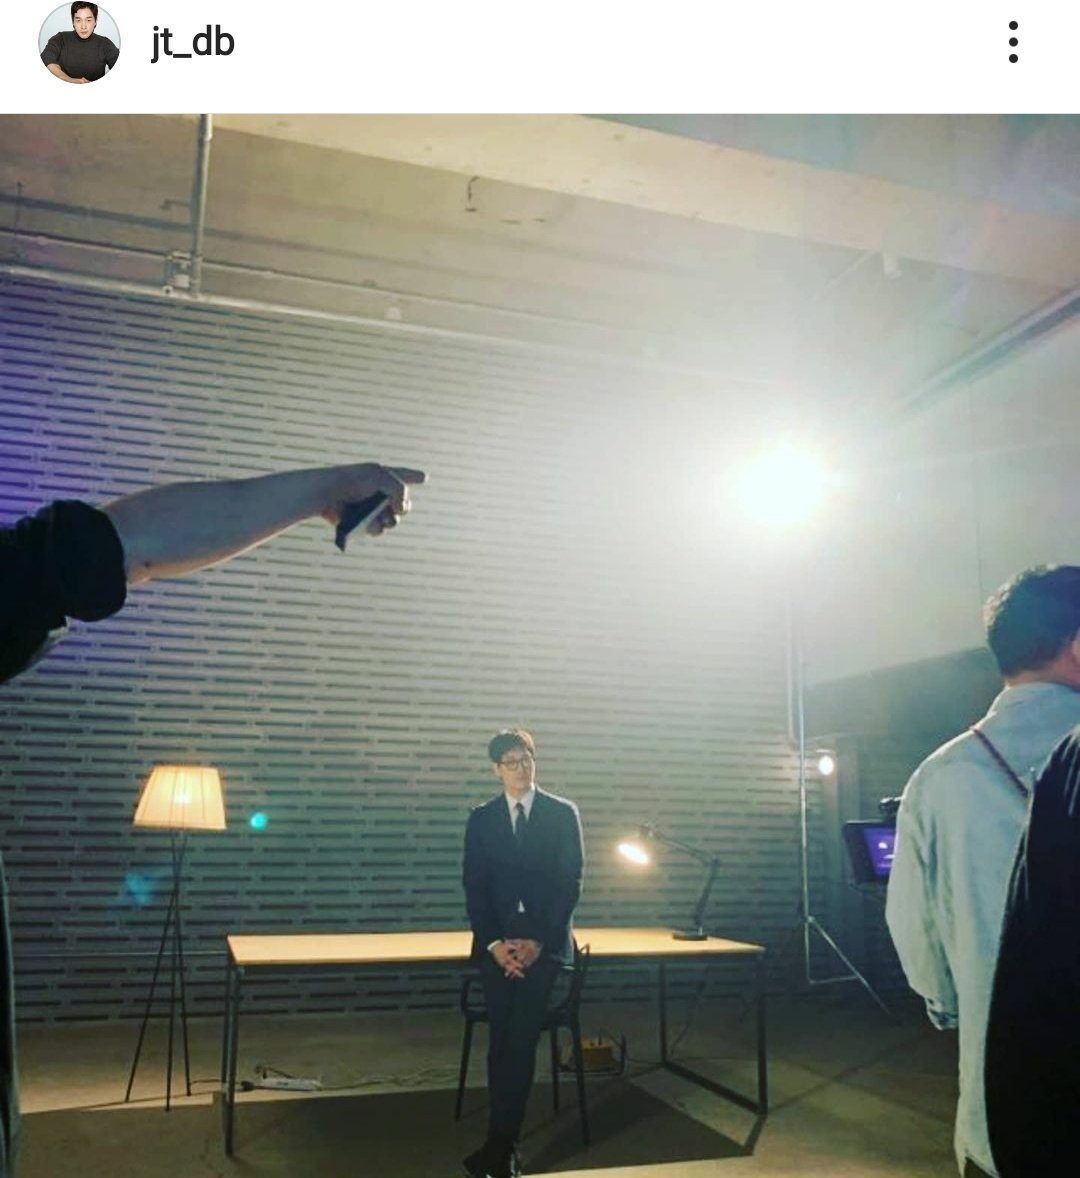 Yoo Ji Tae's Instagram updateThat's definitely his look as professorWhat are we getting 